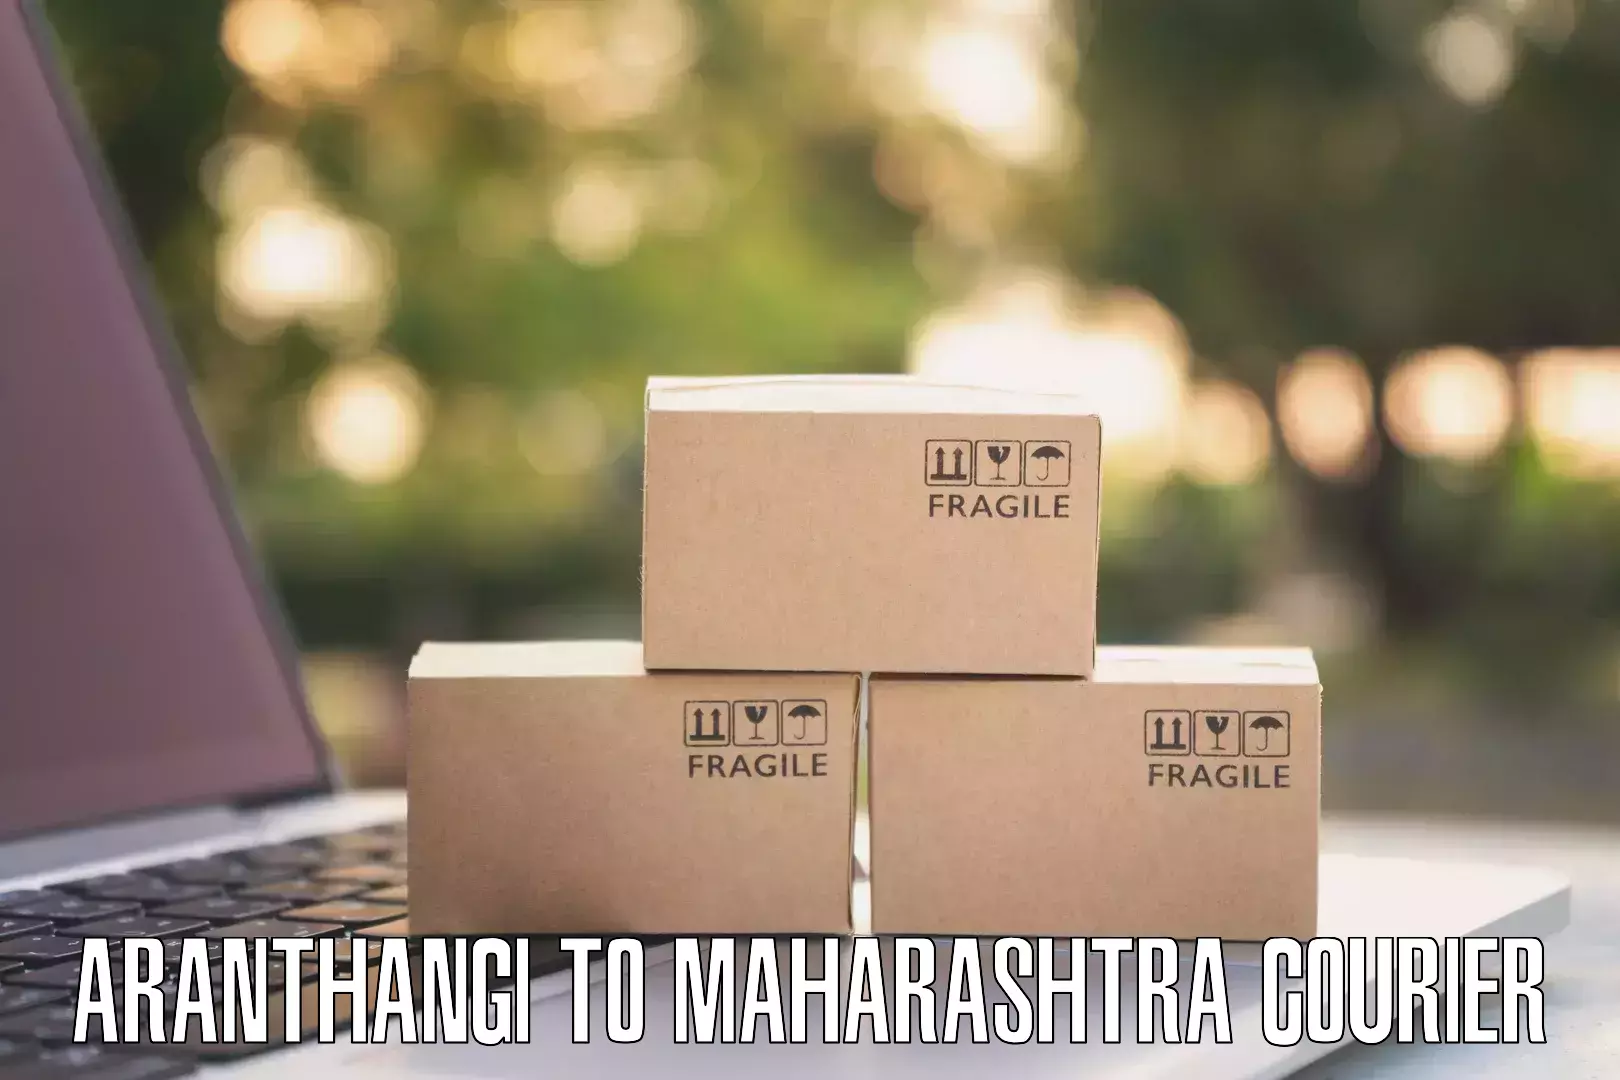 Enhanced tracking features Aranthangi to Maharashtra